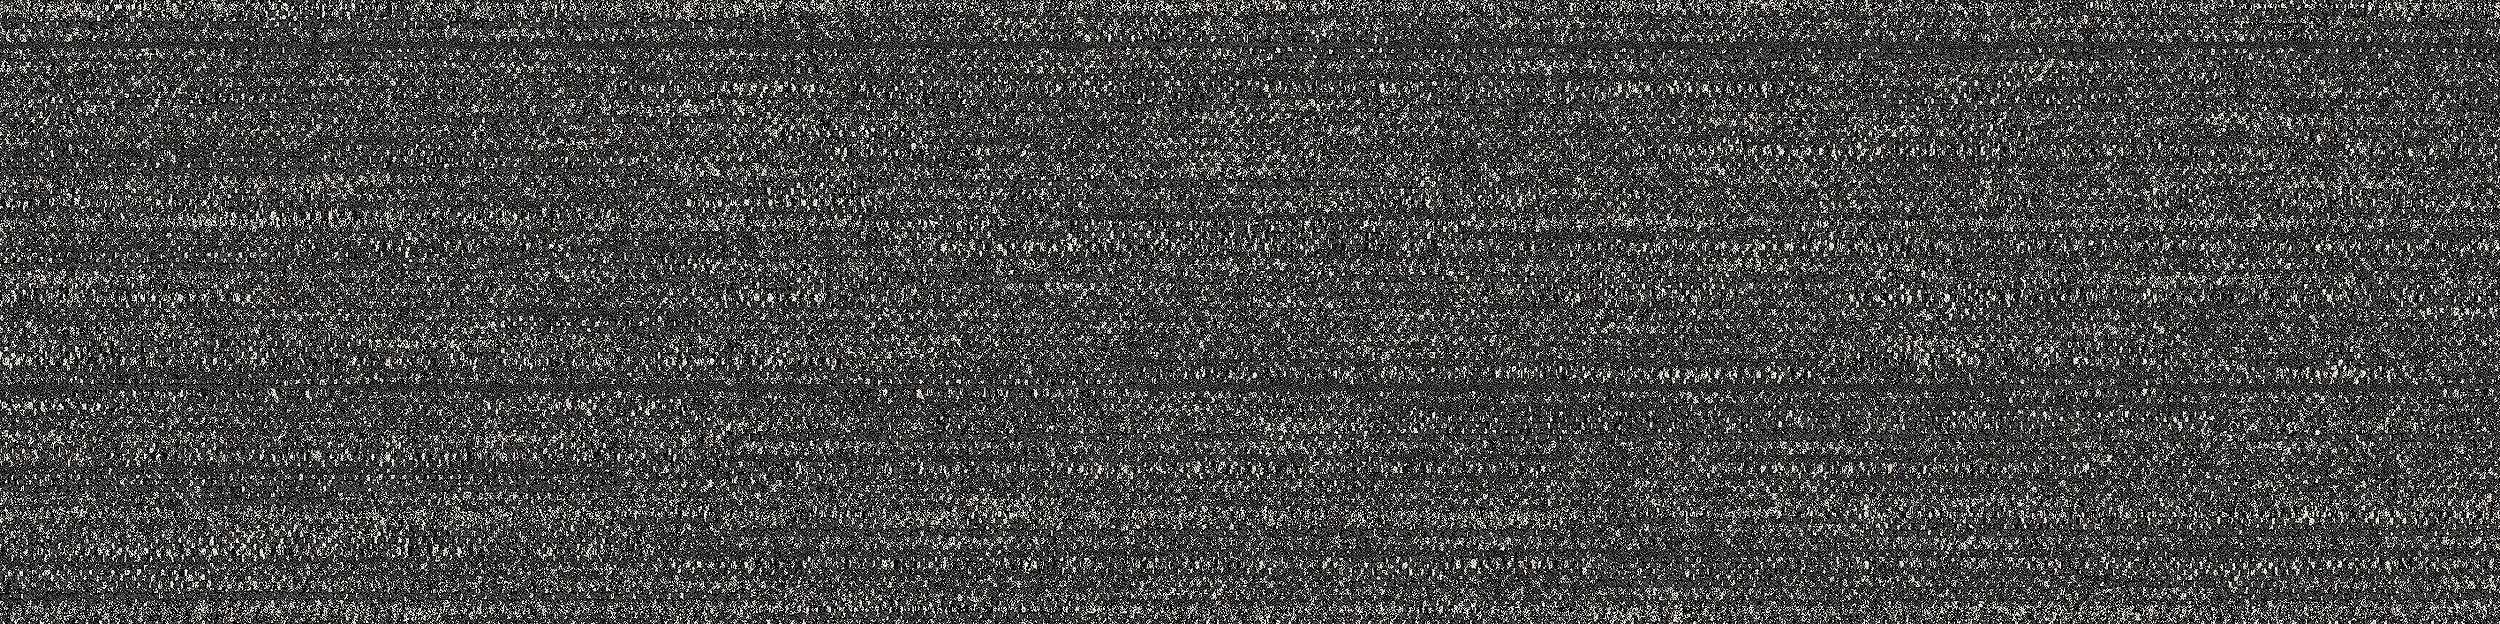 WW880 Carpet Tile In Black Loom imagen número 8